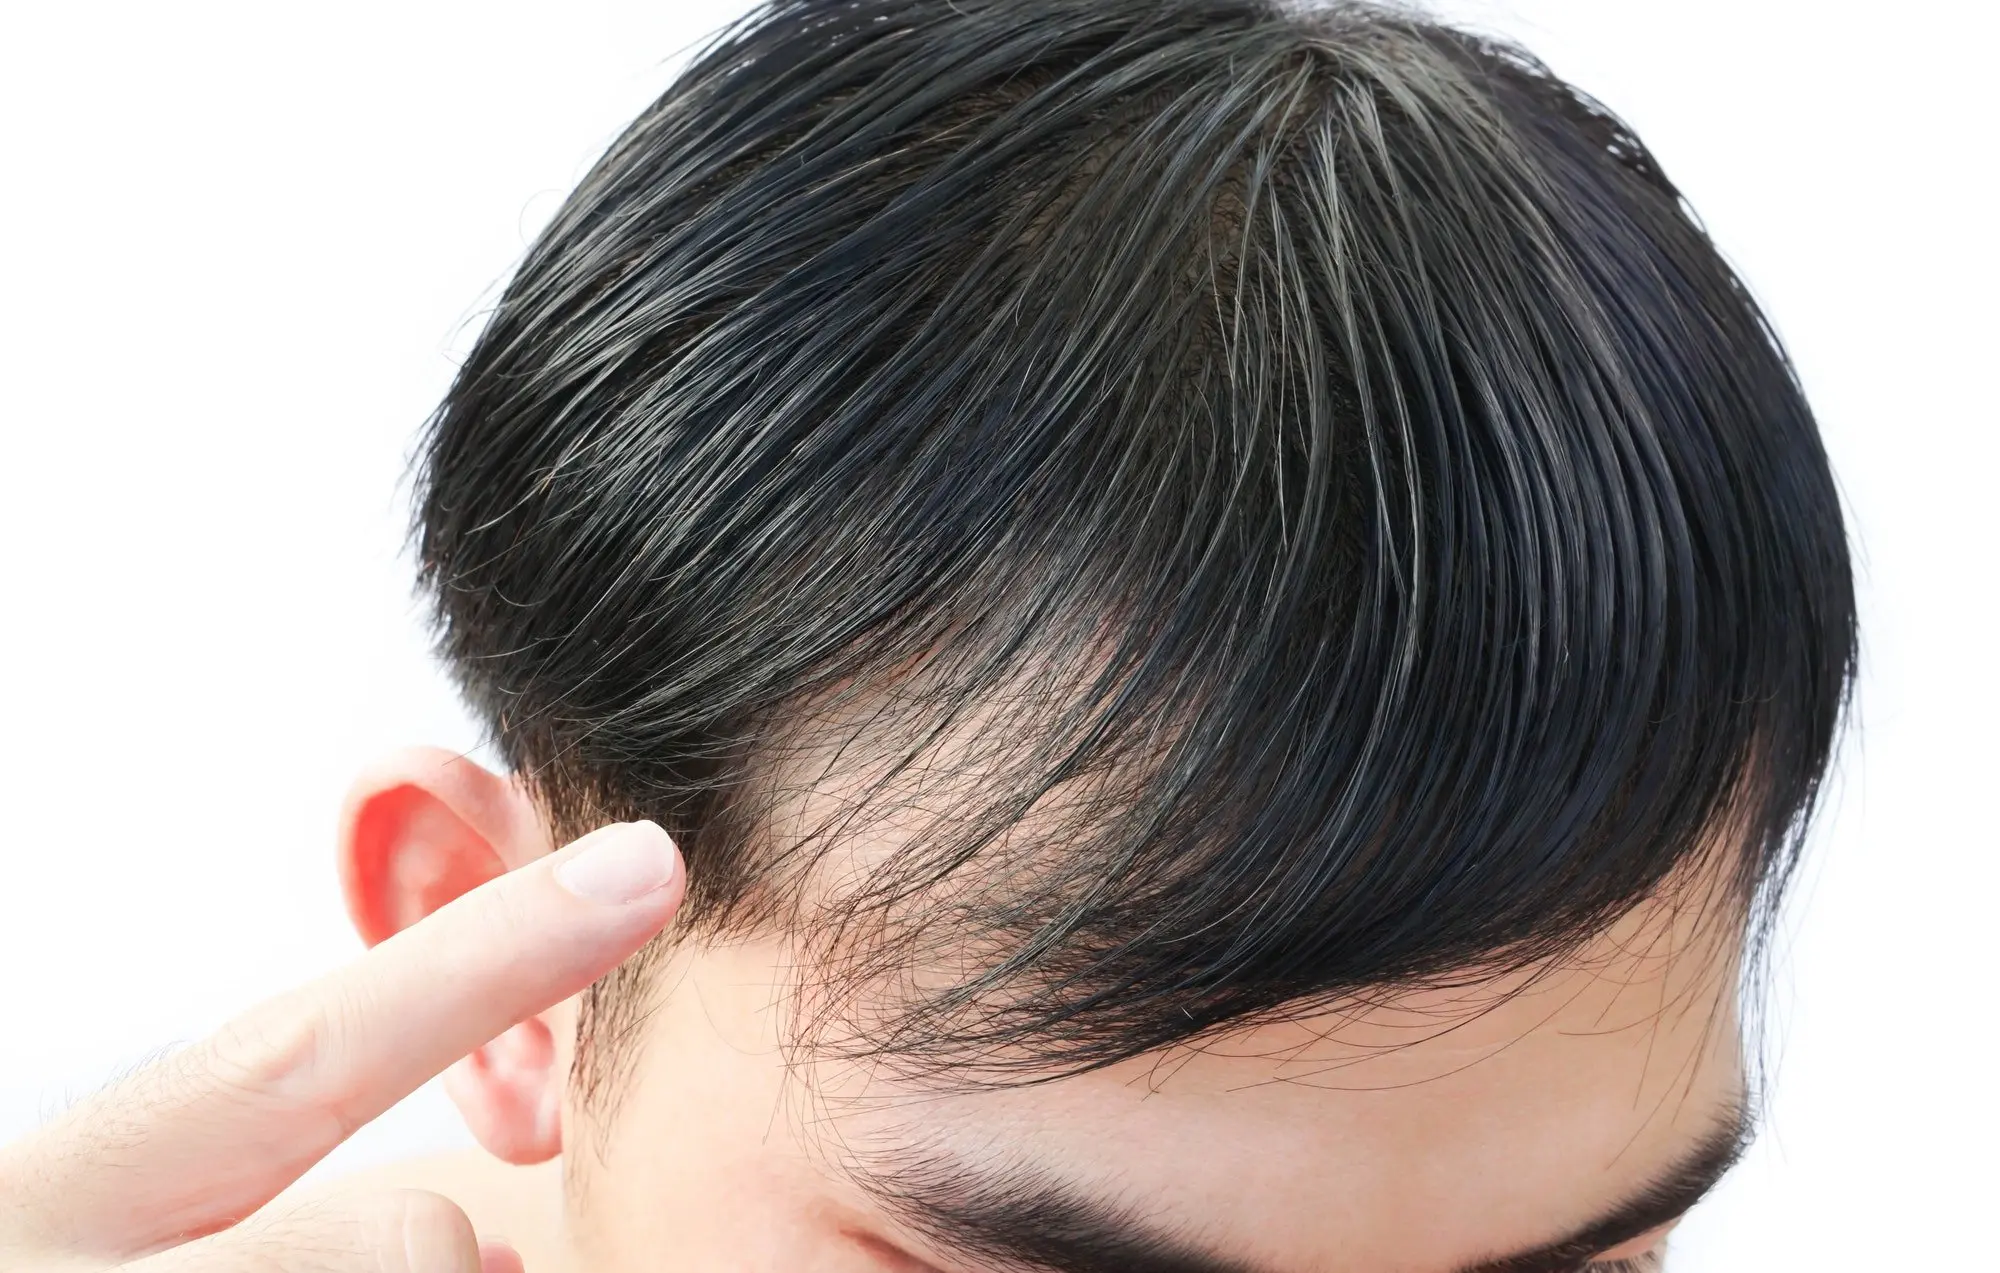 Haarausfall - Effluvium oder Alopezie?